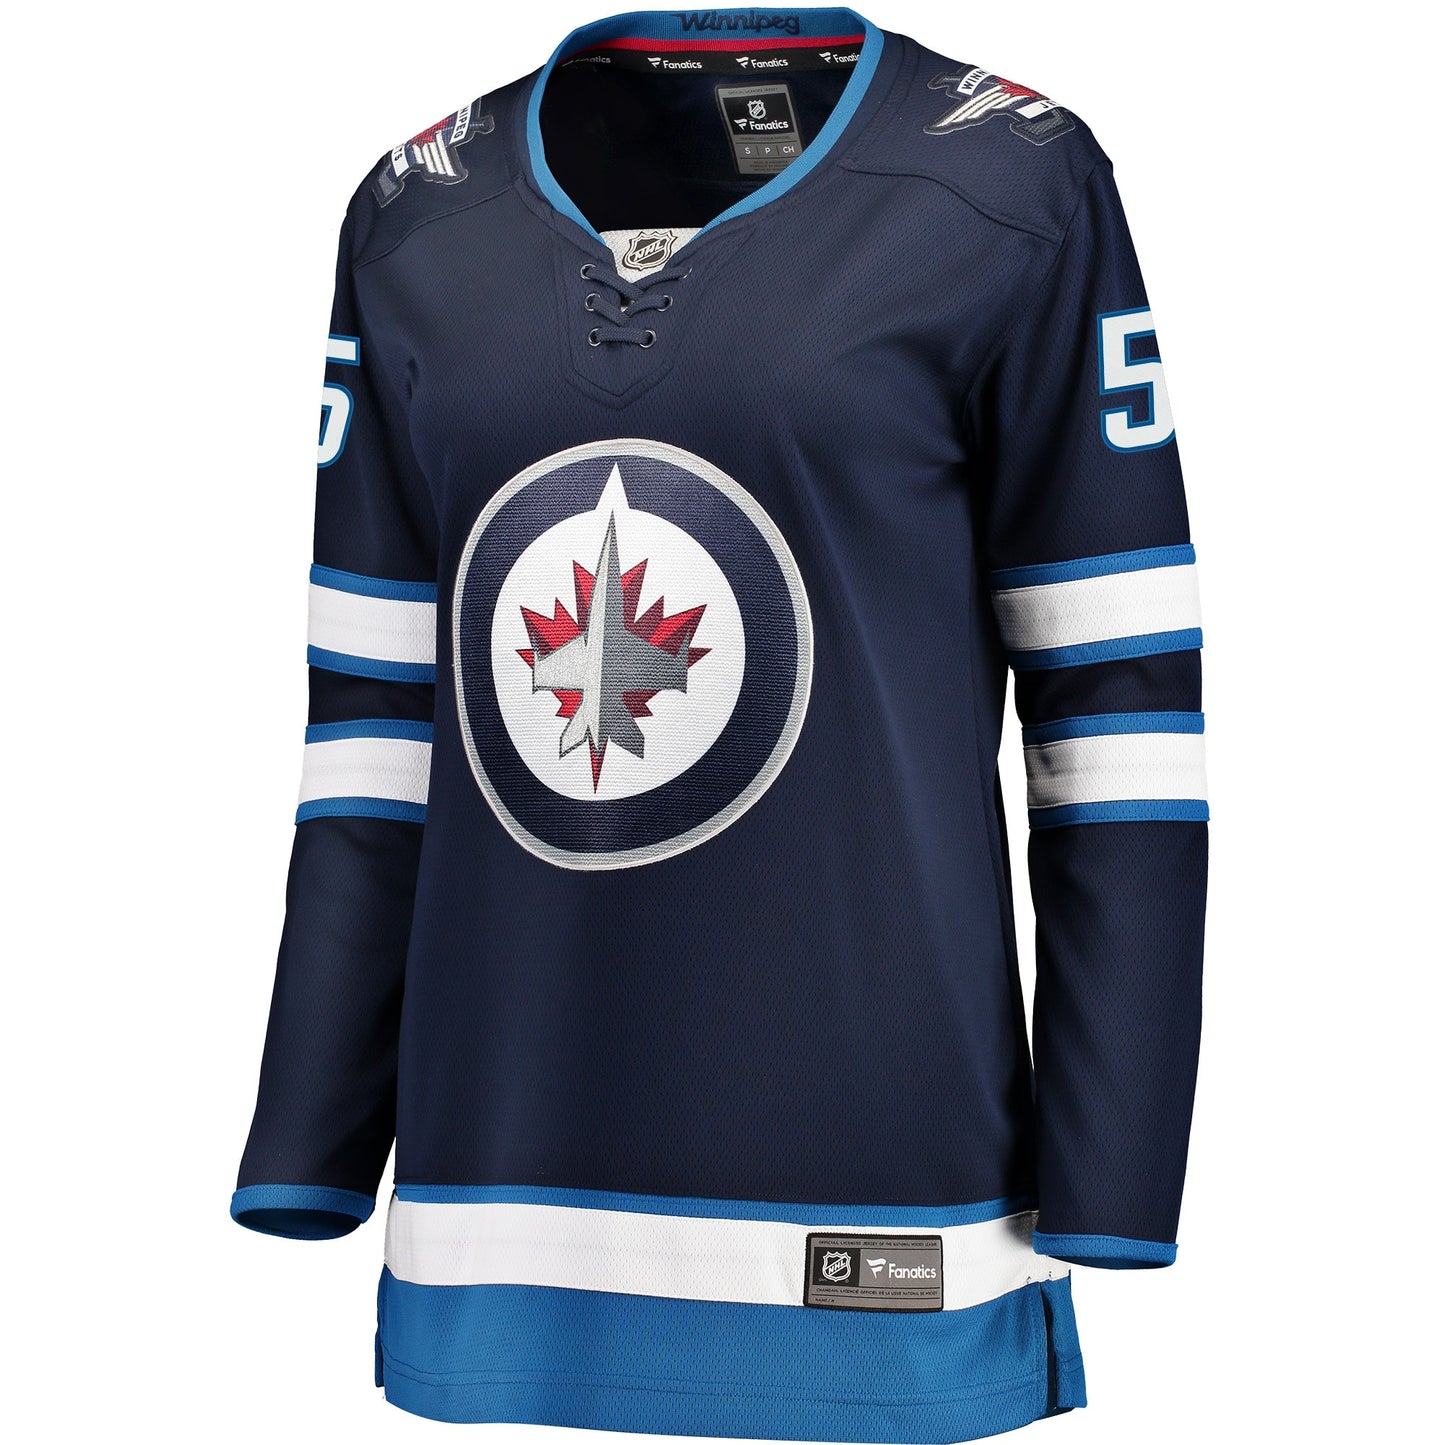 Mark Scheifele Winnipeg Jets Fanatics Branded Women's Breakaway Player Jersey - Navy